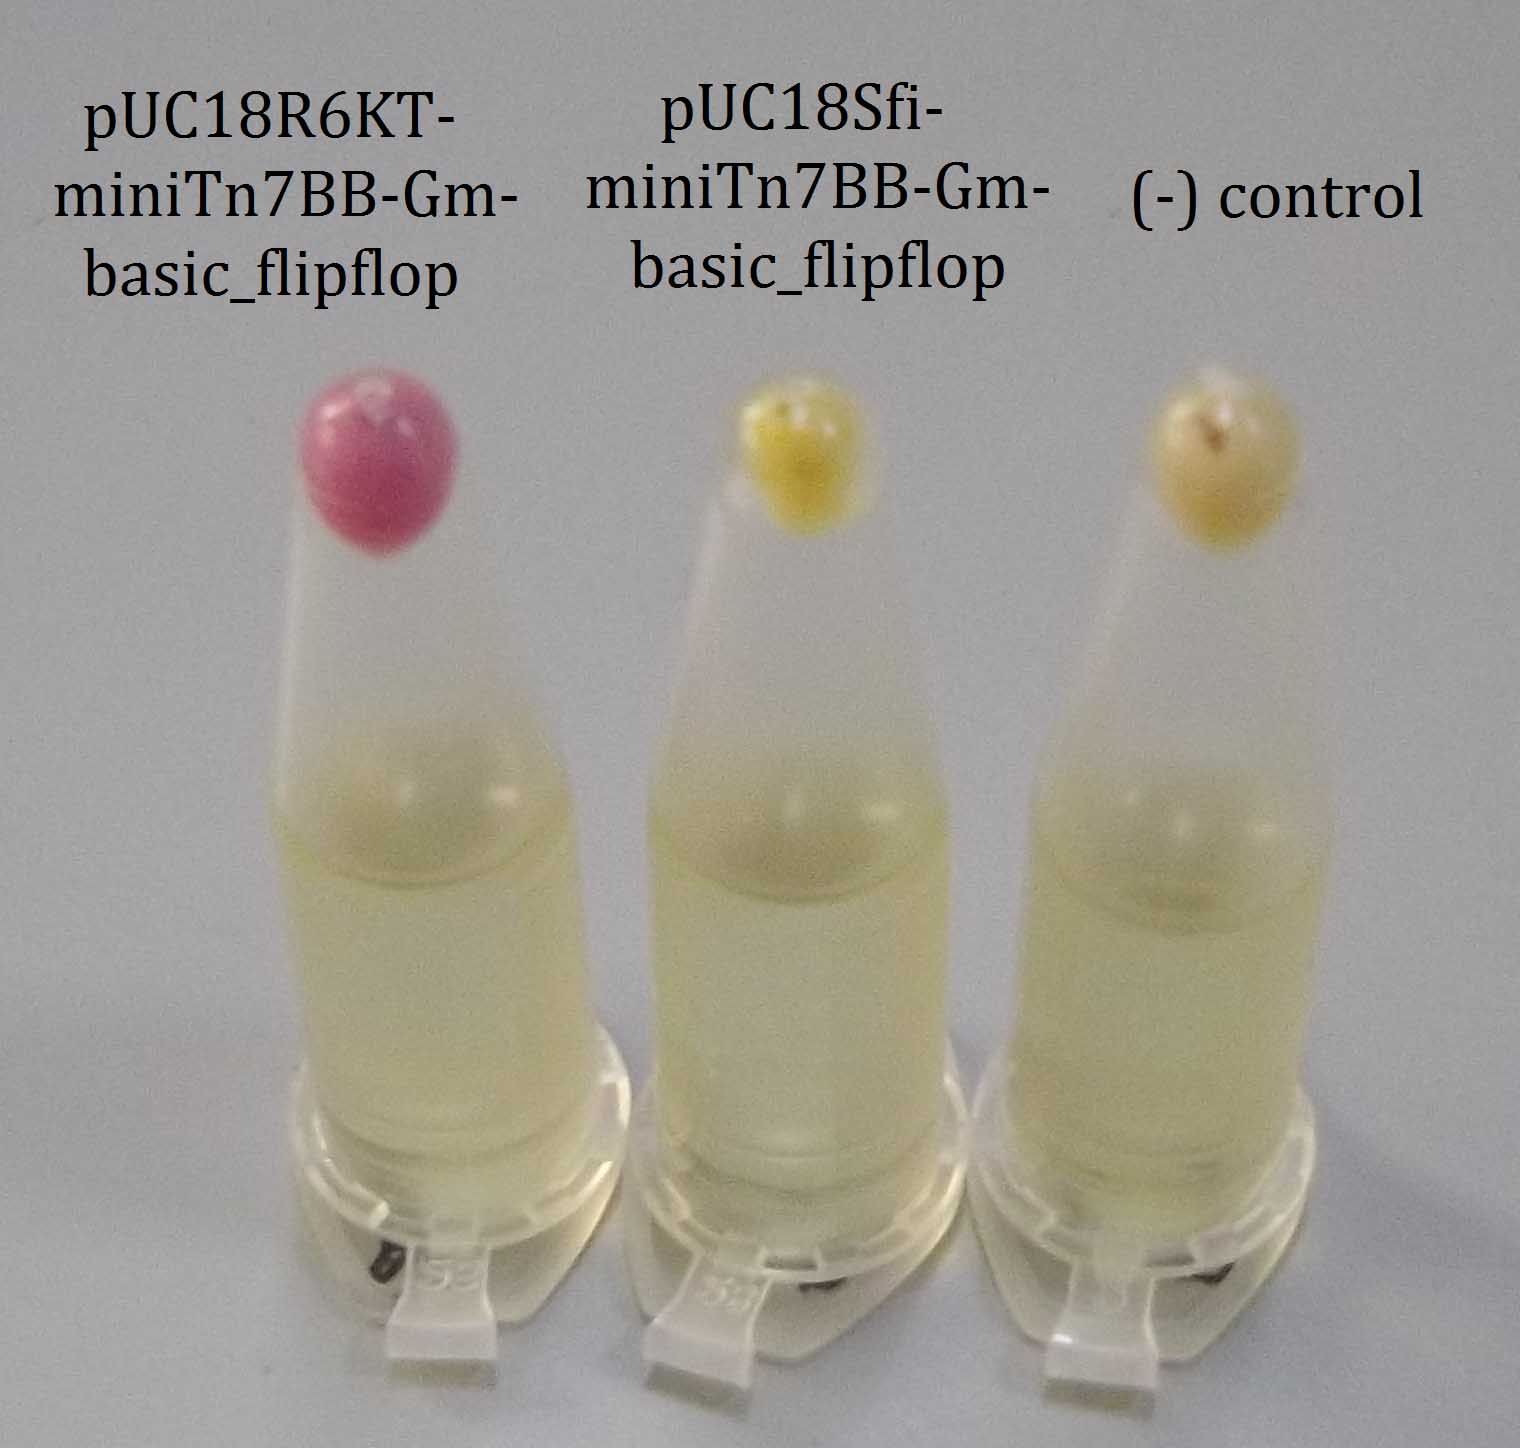 UPOSevilla-miniTn7-basic flipflop-pellets.jpg